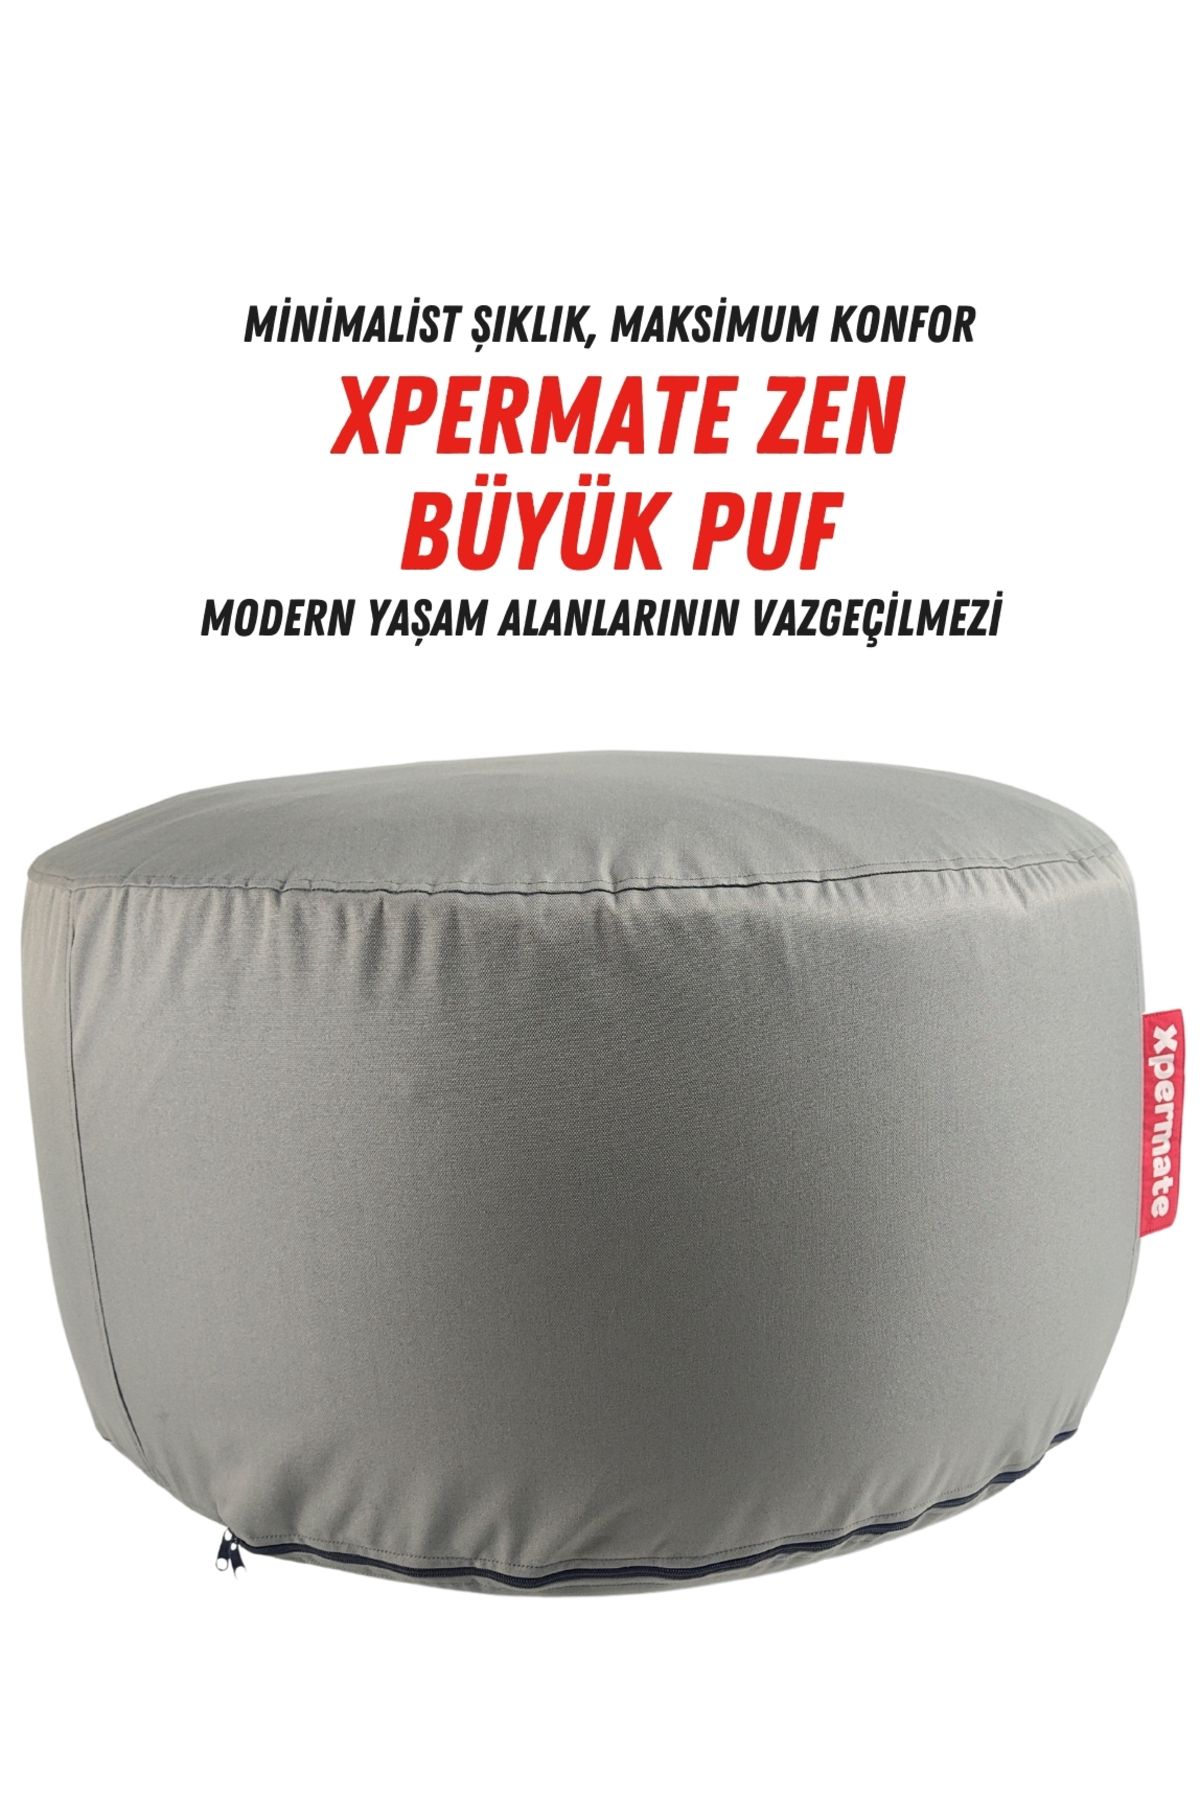 XPERMATE Zen Puf Bench Fermuarlı Puf Koltuk Yıkanabilir Kılıf Ayak Ucu Puf ve Makyaj Koltuğu 80x40 Antrasit